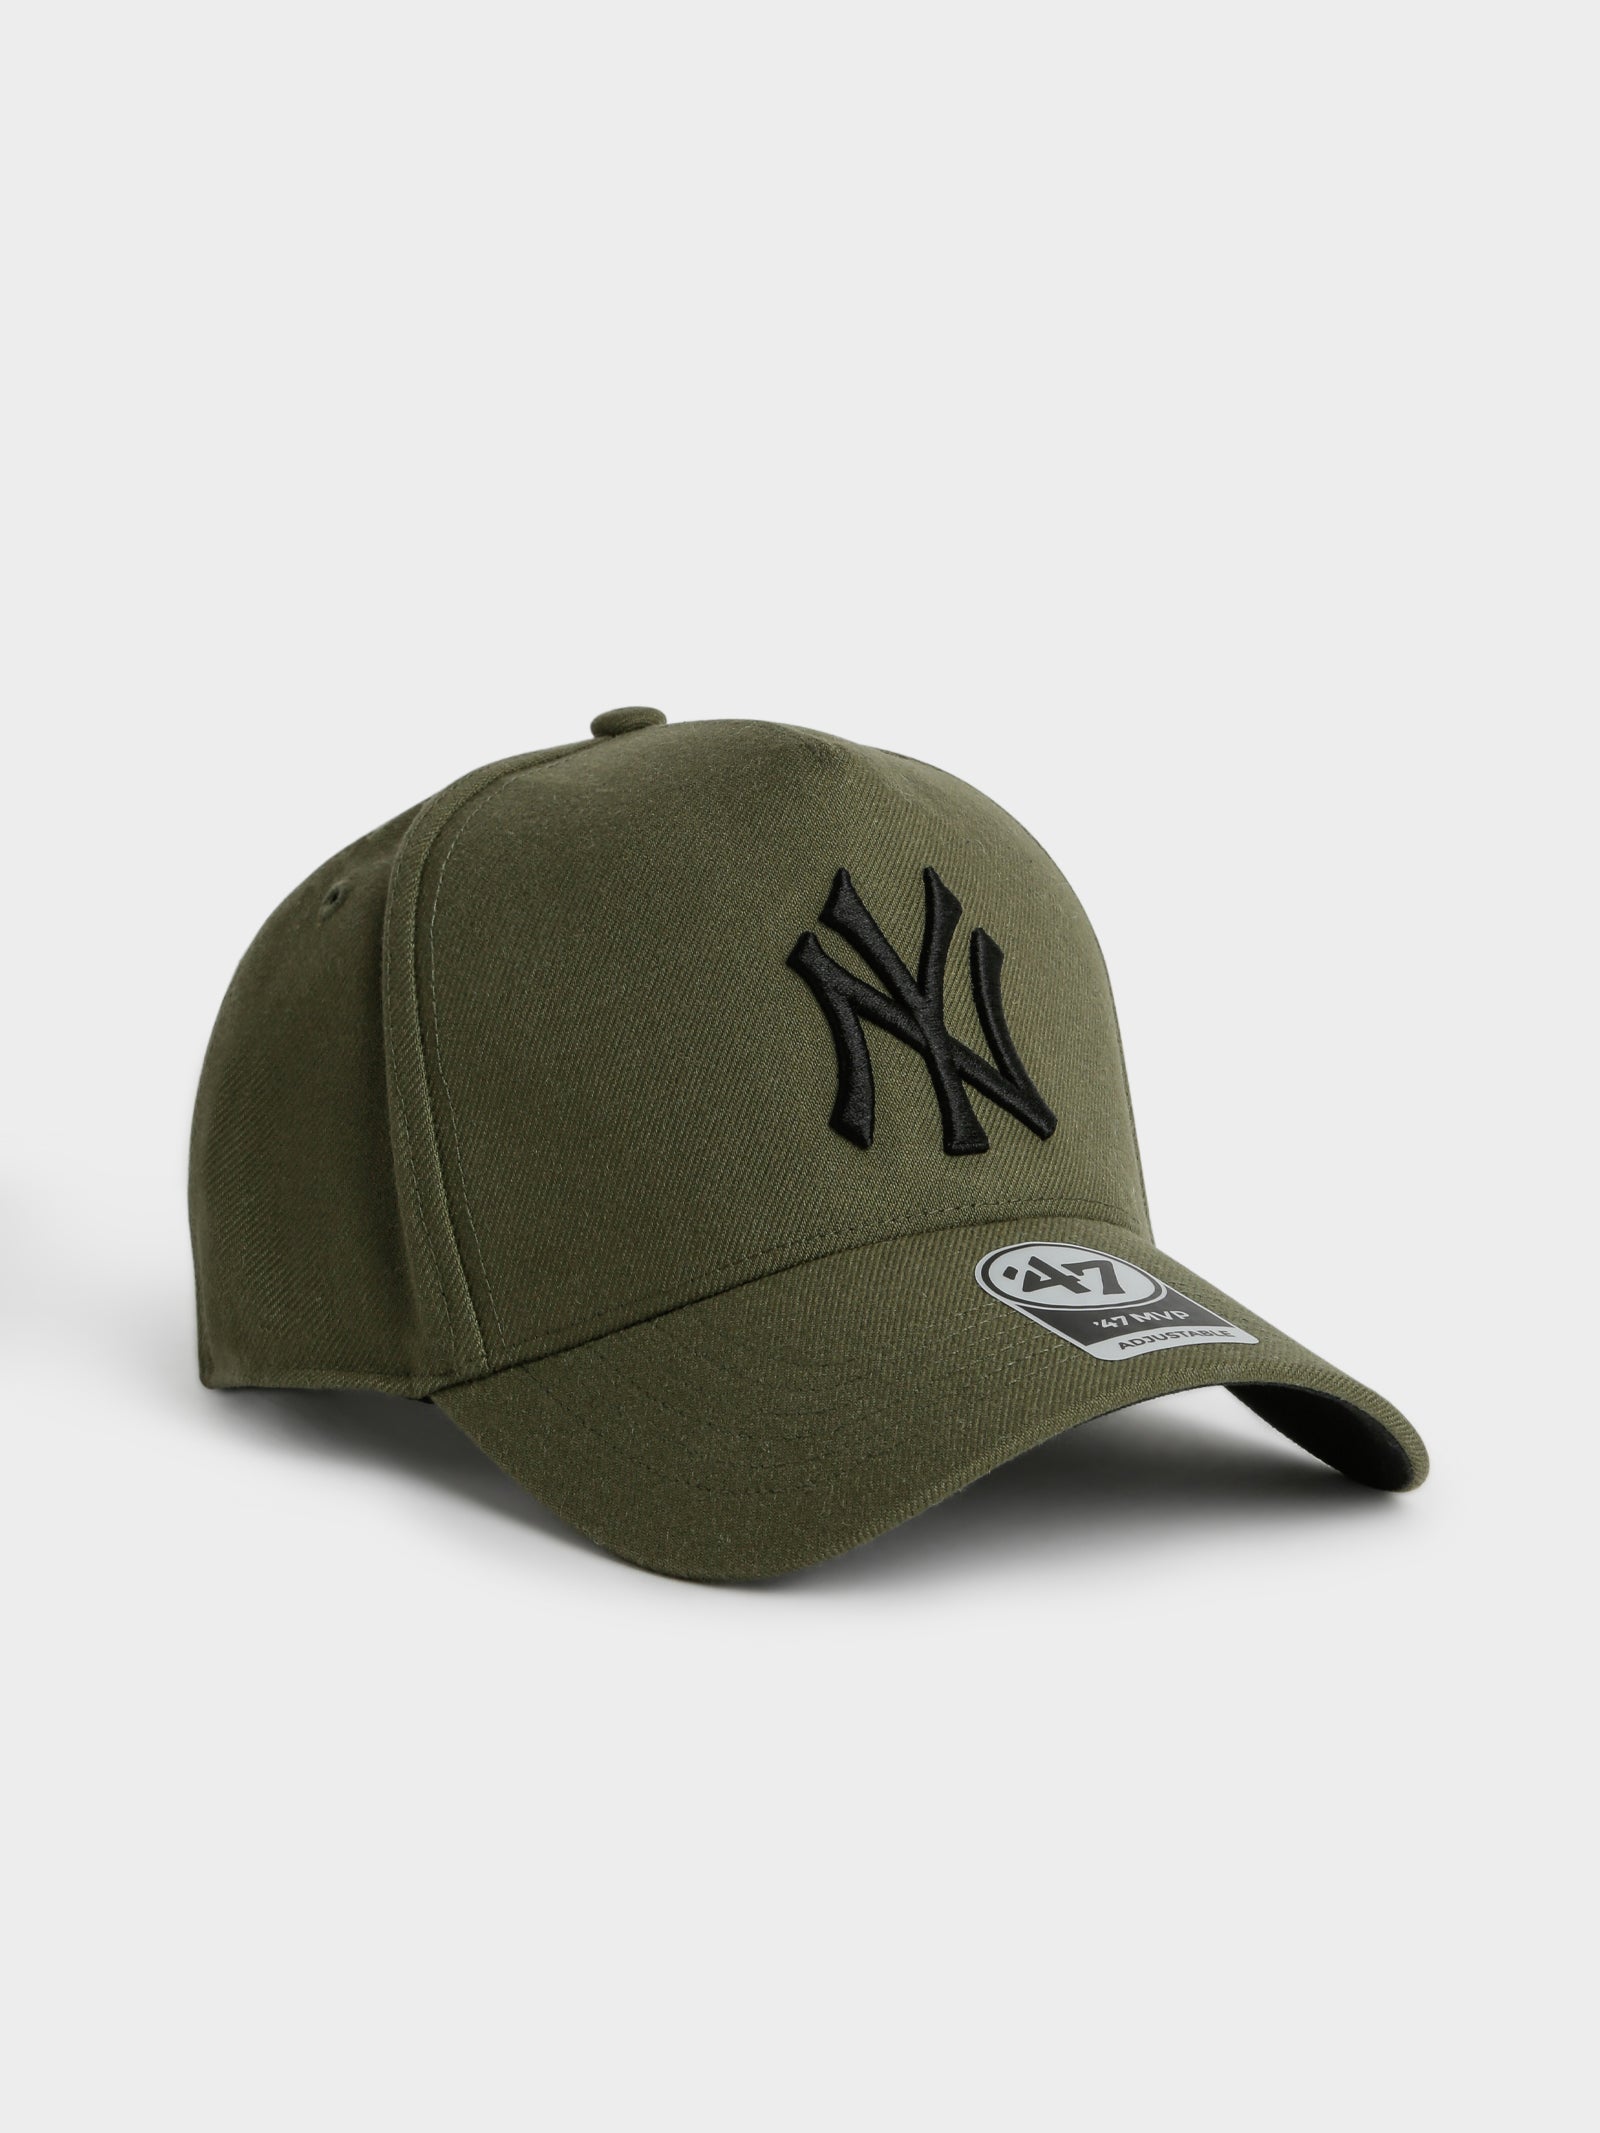 Yankees Replica Snapback Cap in Khaki